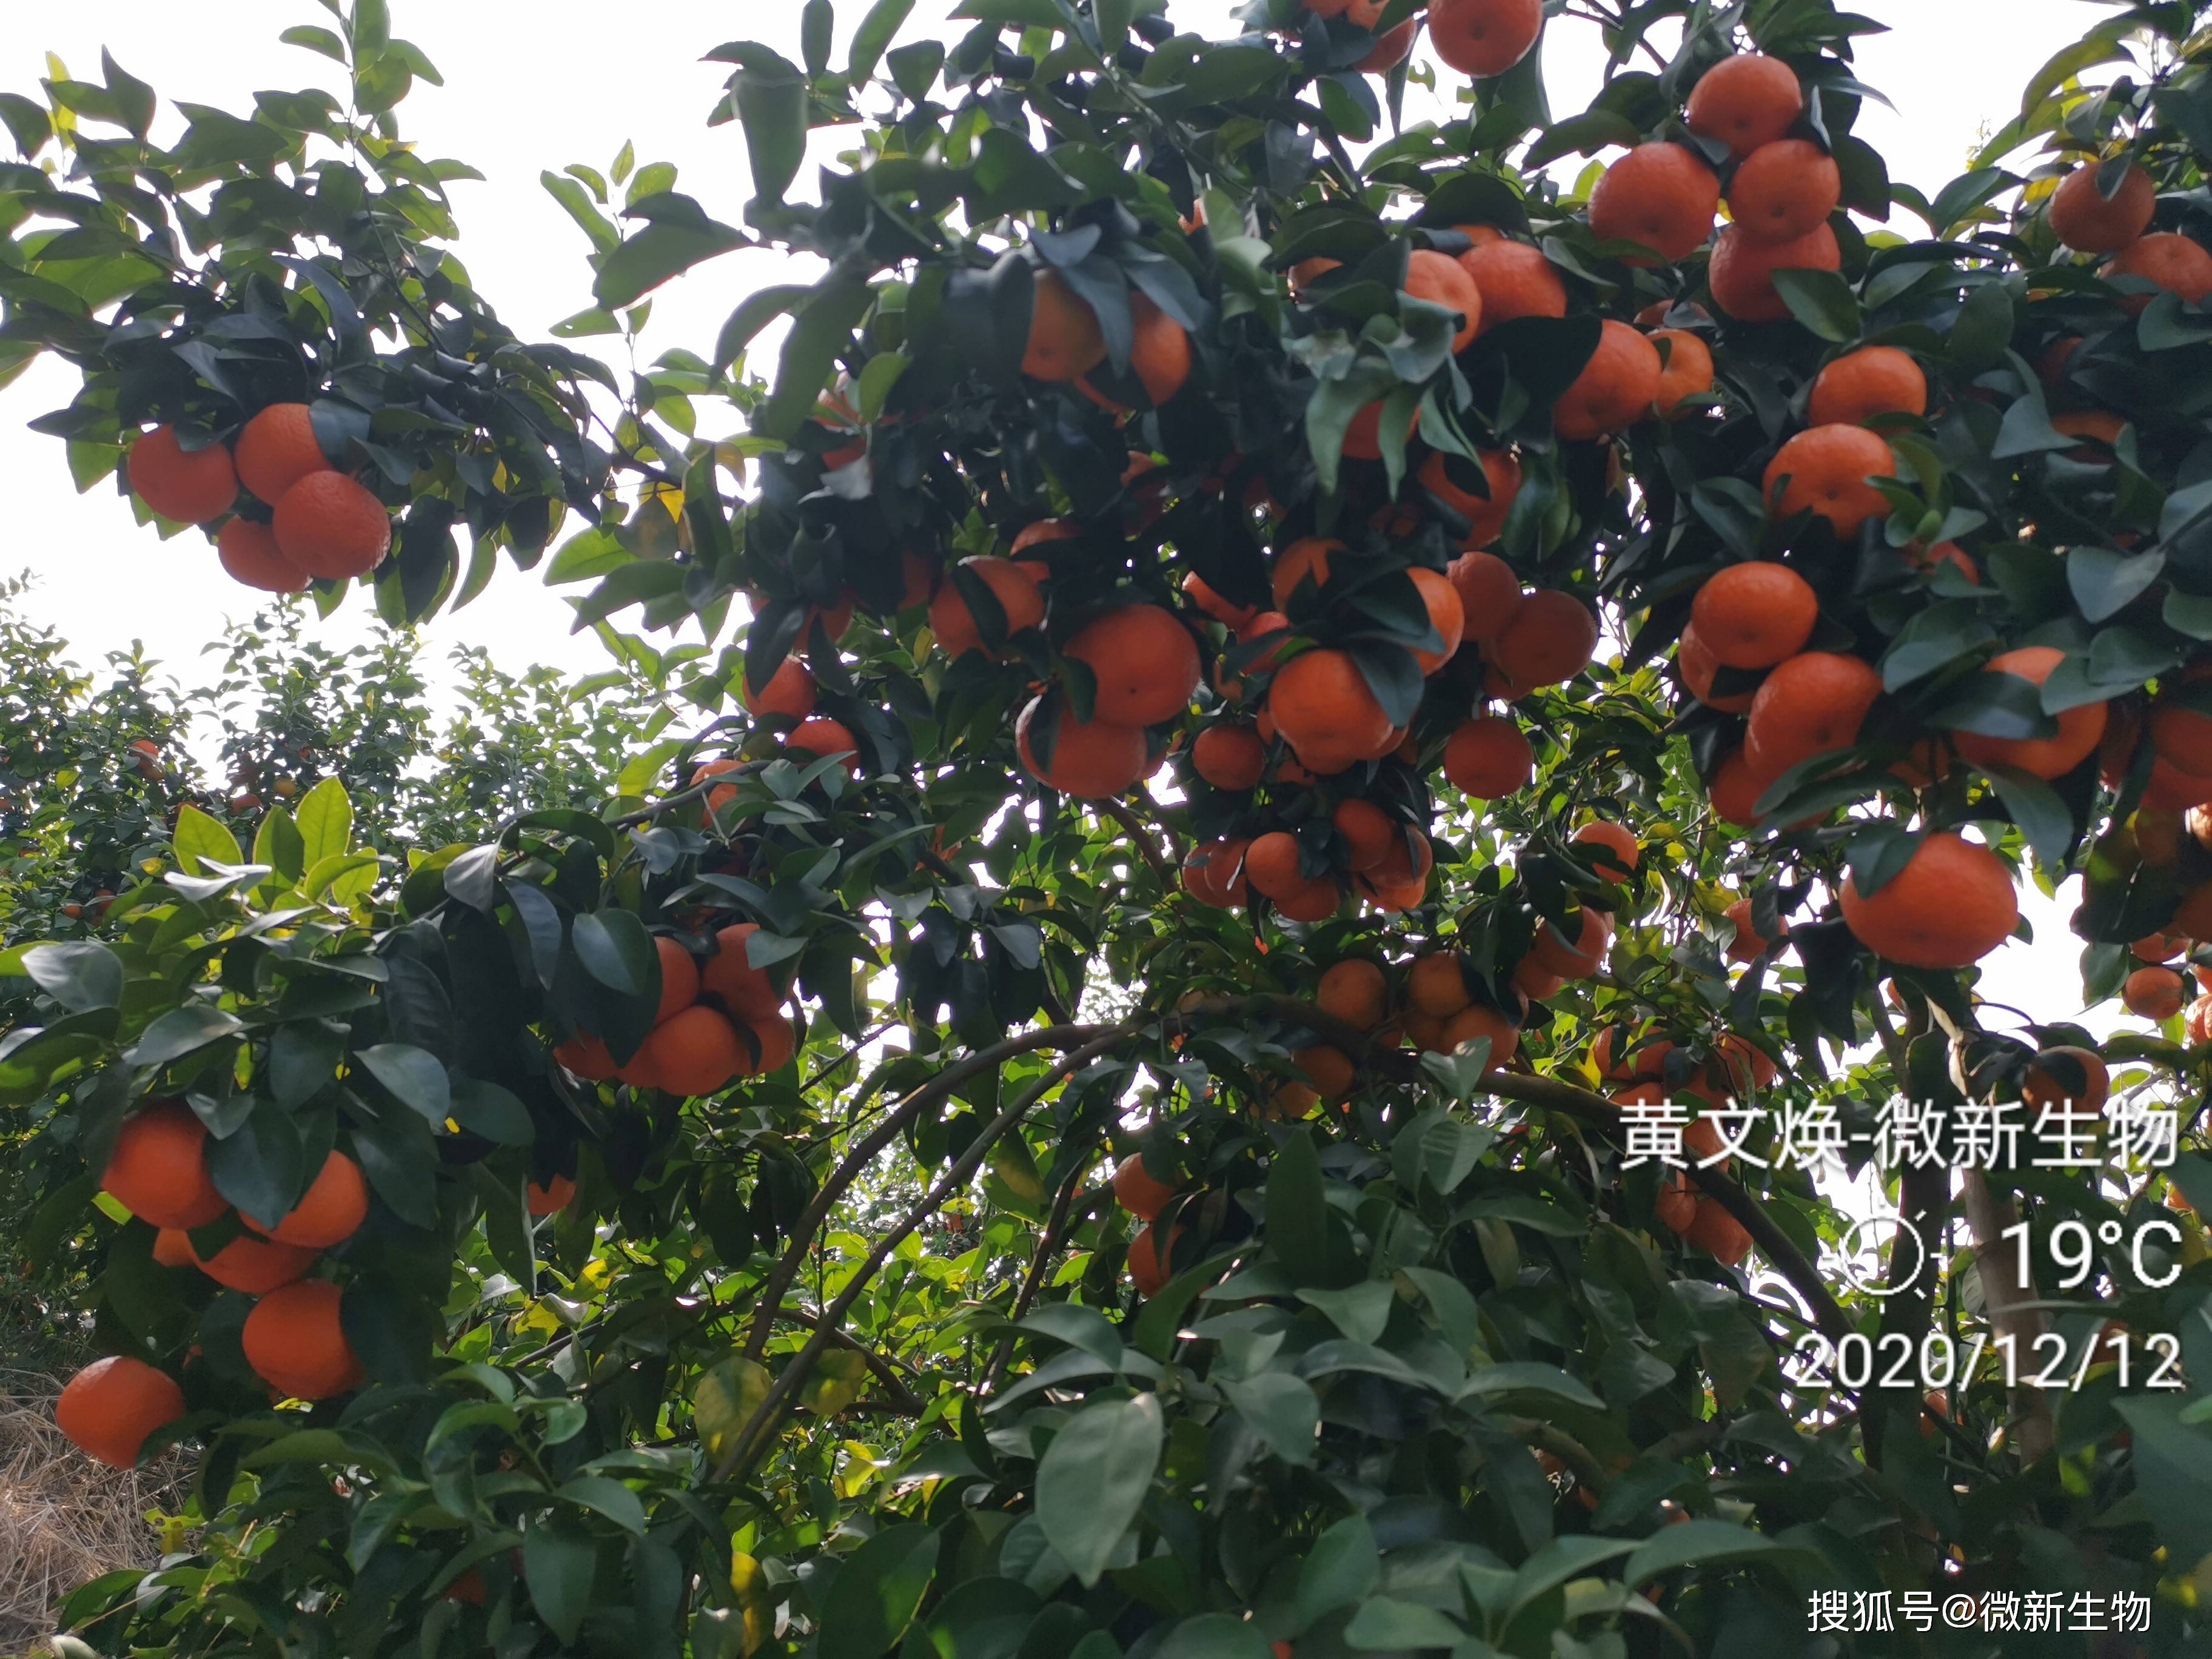 柑橘行情:砂糖橘2.6元,下树60%,坐标广西来宾市象州县